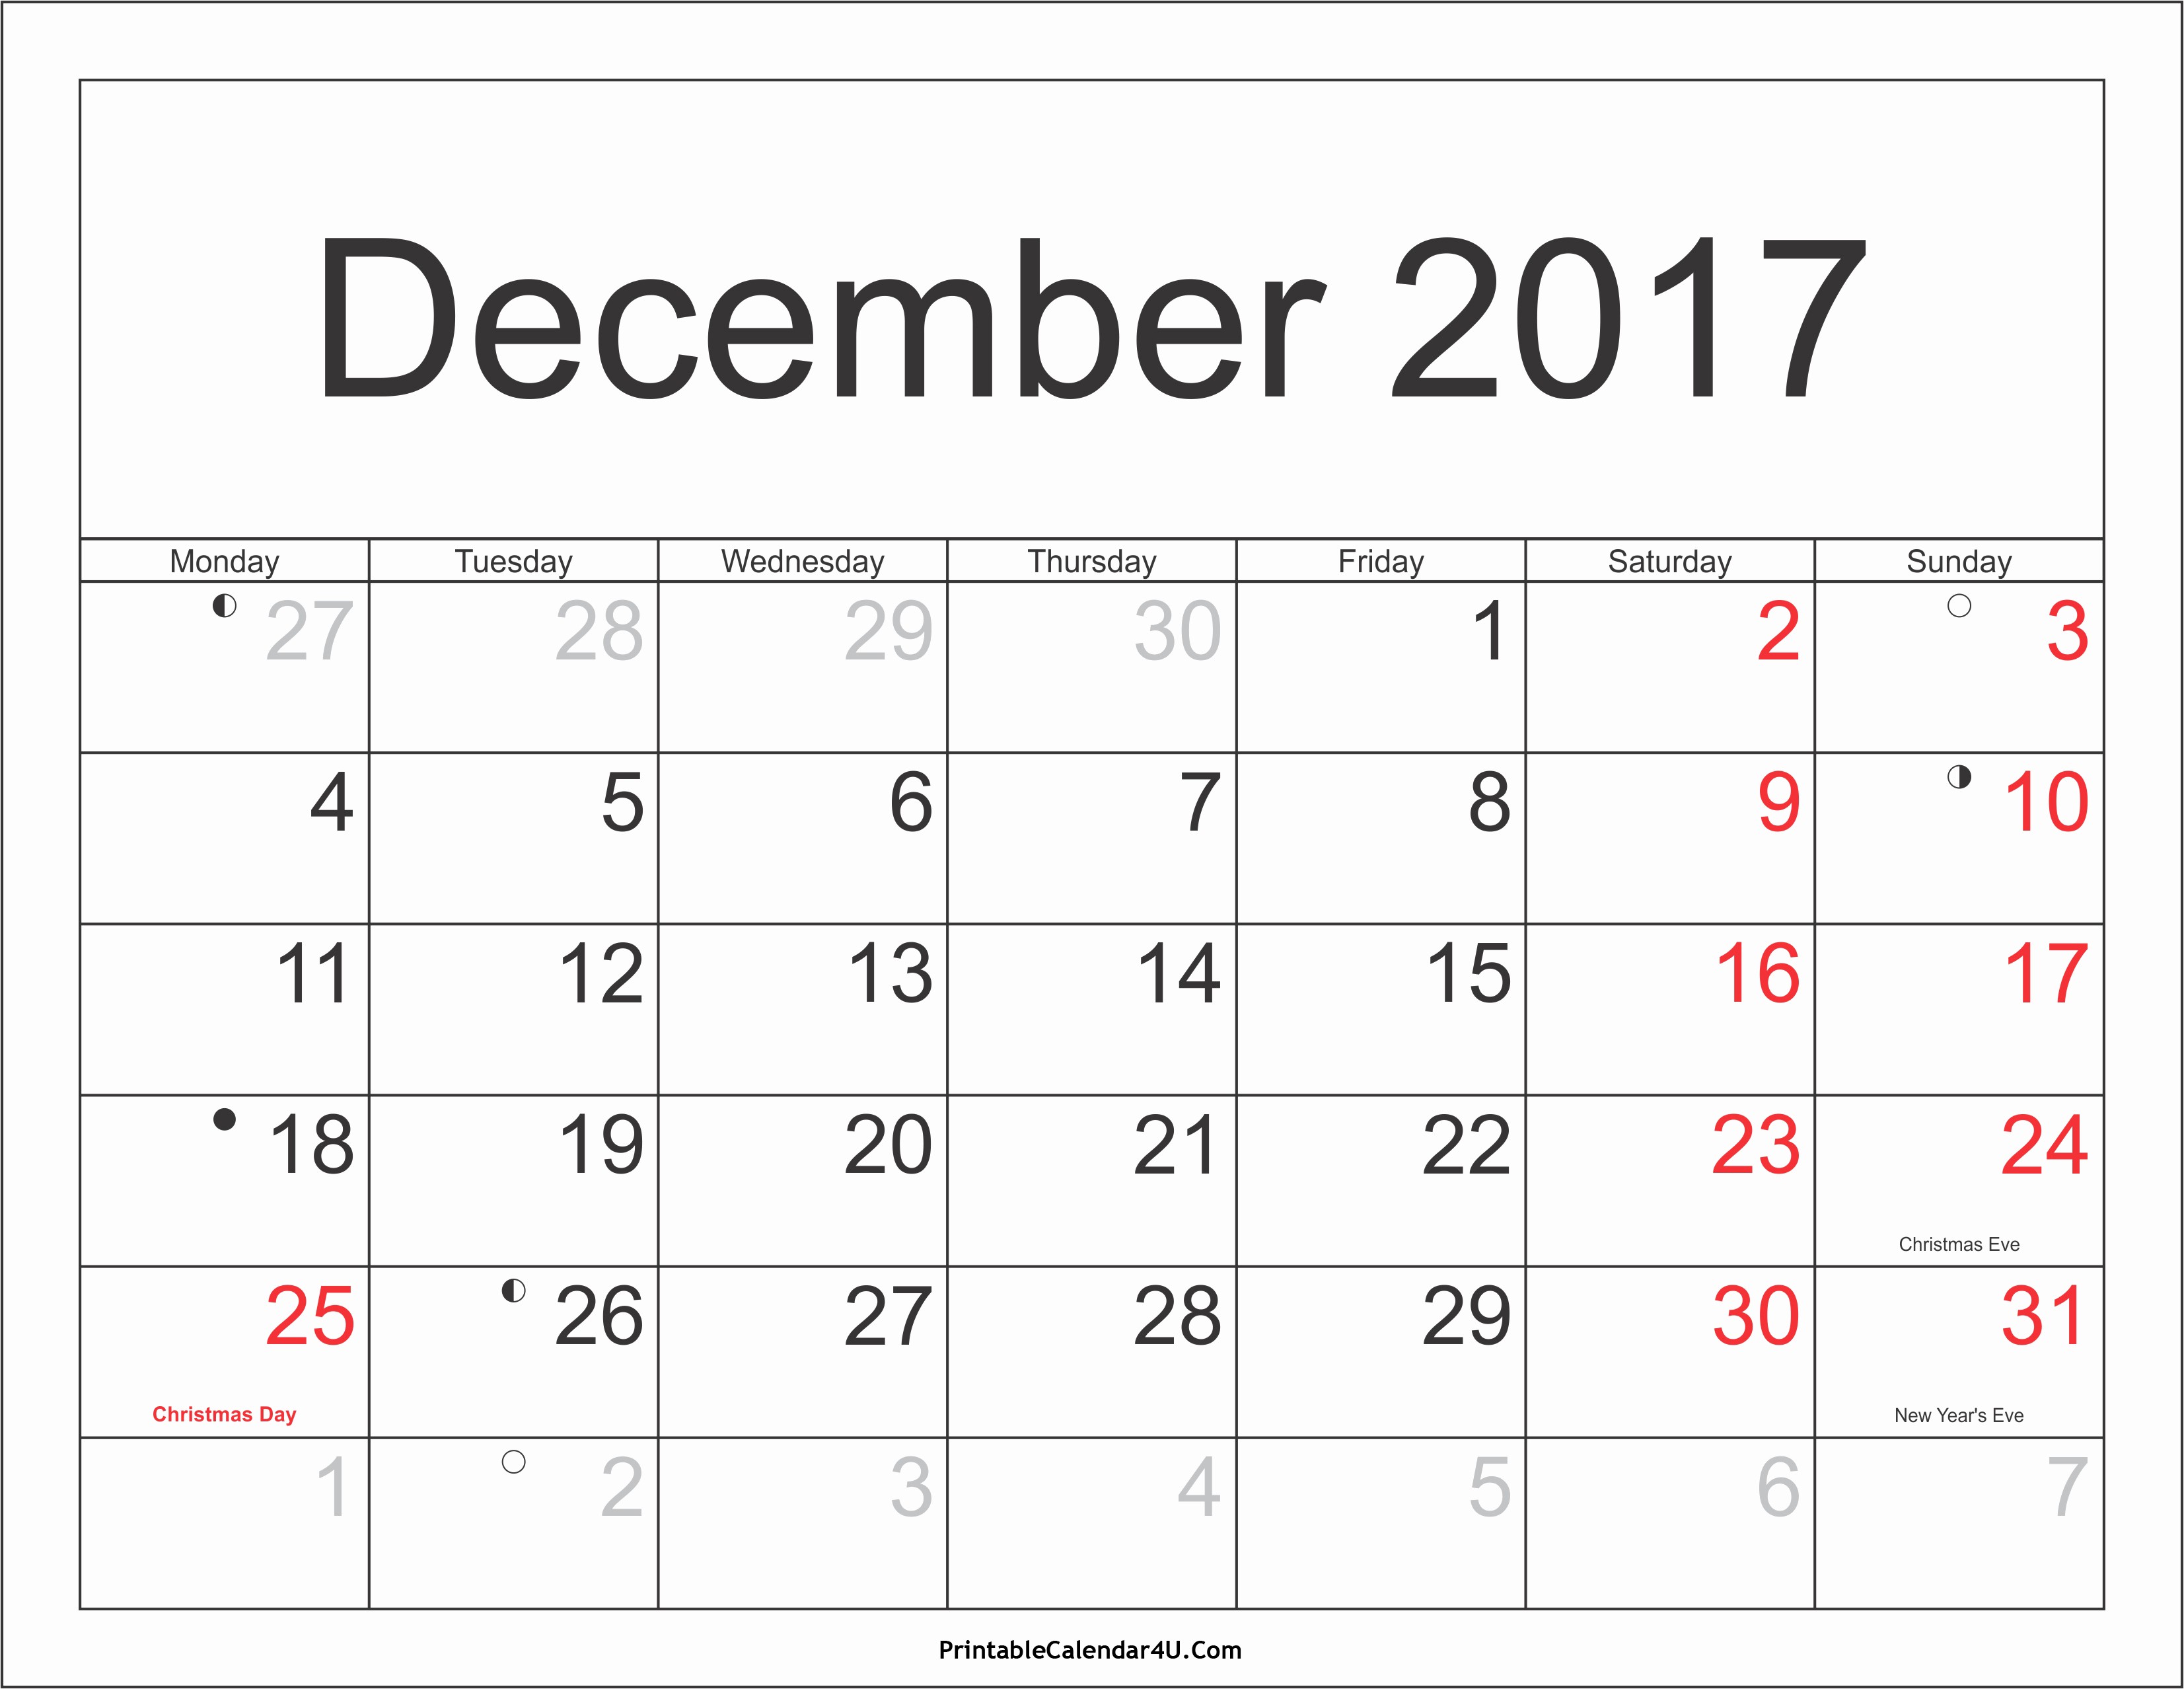 December 2017 Calendar Template Word New December 2017 Calendar Pdf